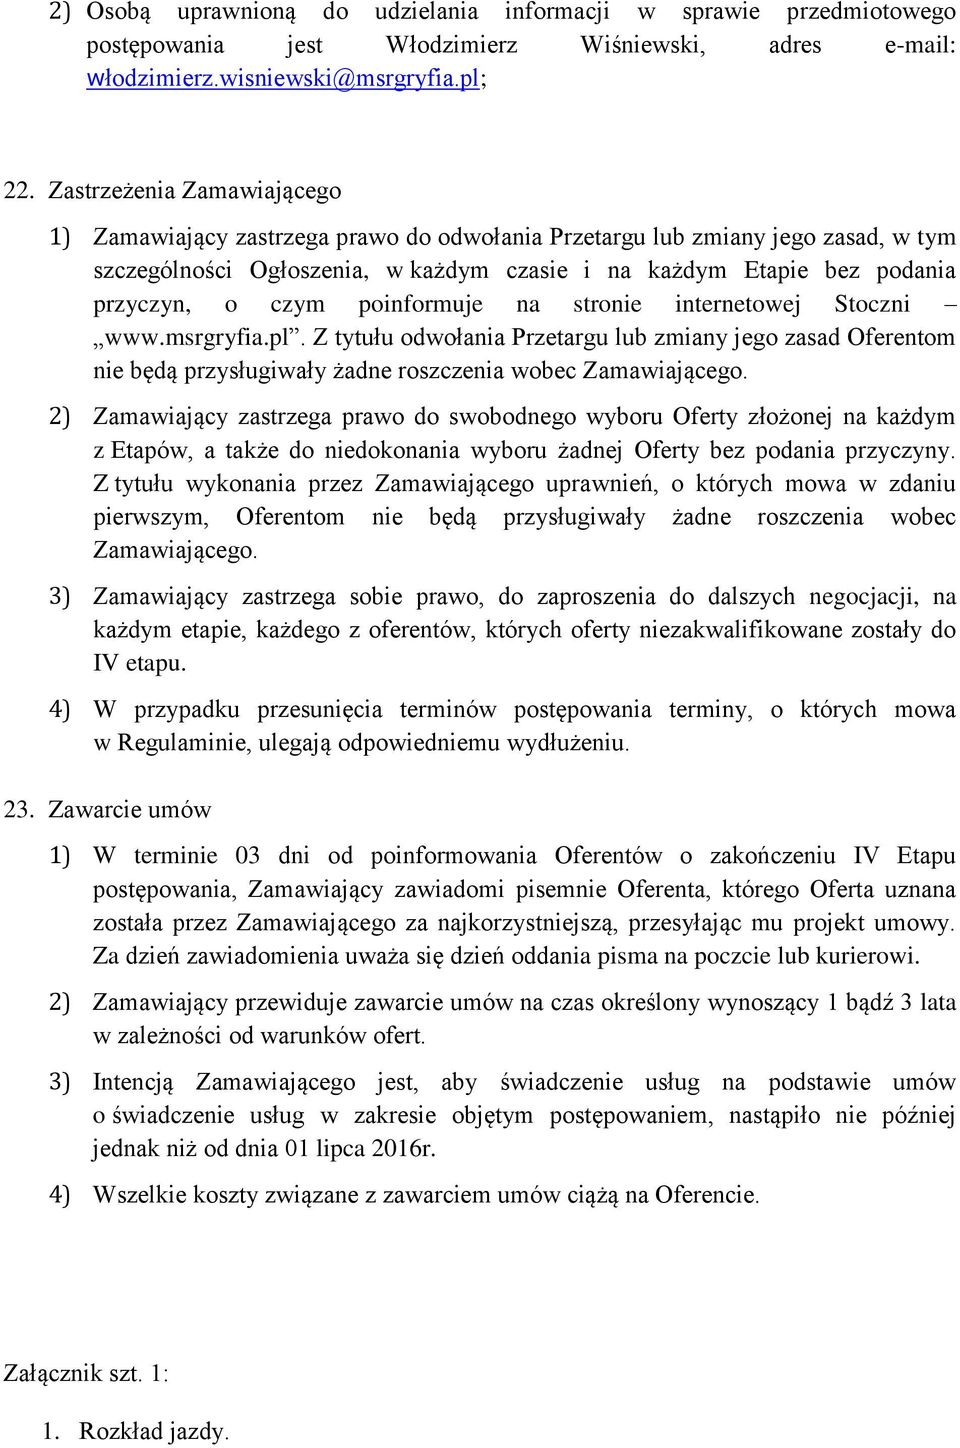 poinformuje na stronie internetowej Stoczni www.msrgryfia.pl. Z tytułu odwołania Przetargu lub zmiany jego zasad Oferentom nie będą przysługiwały żadne roszczenia wobec Zamawiającego.